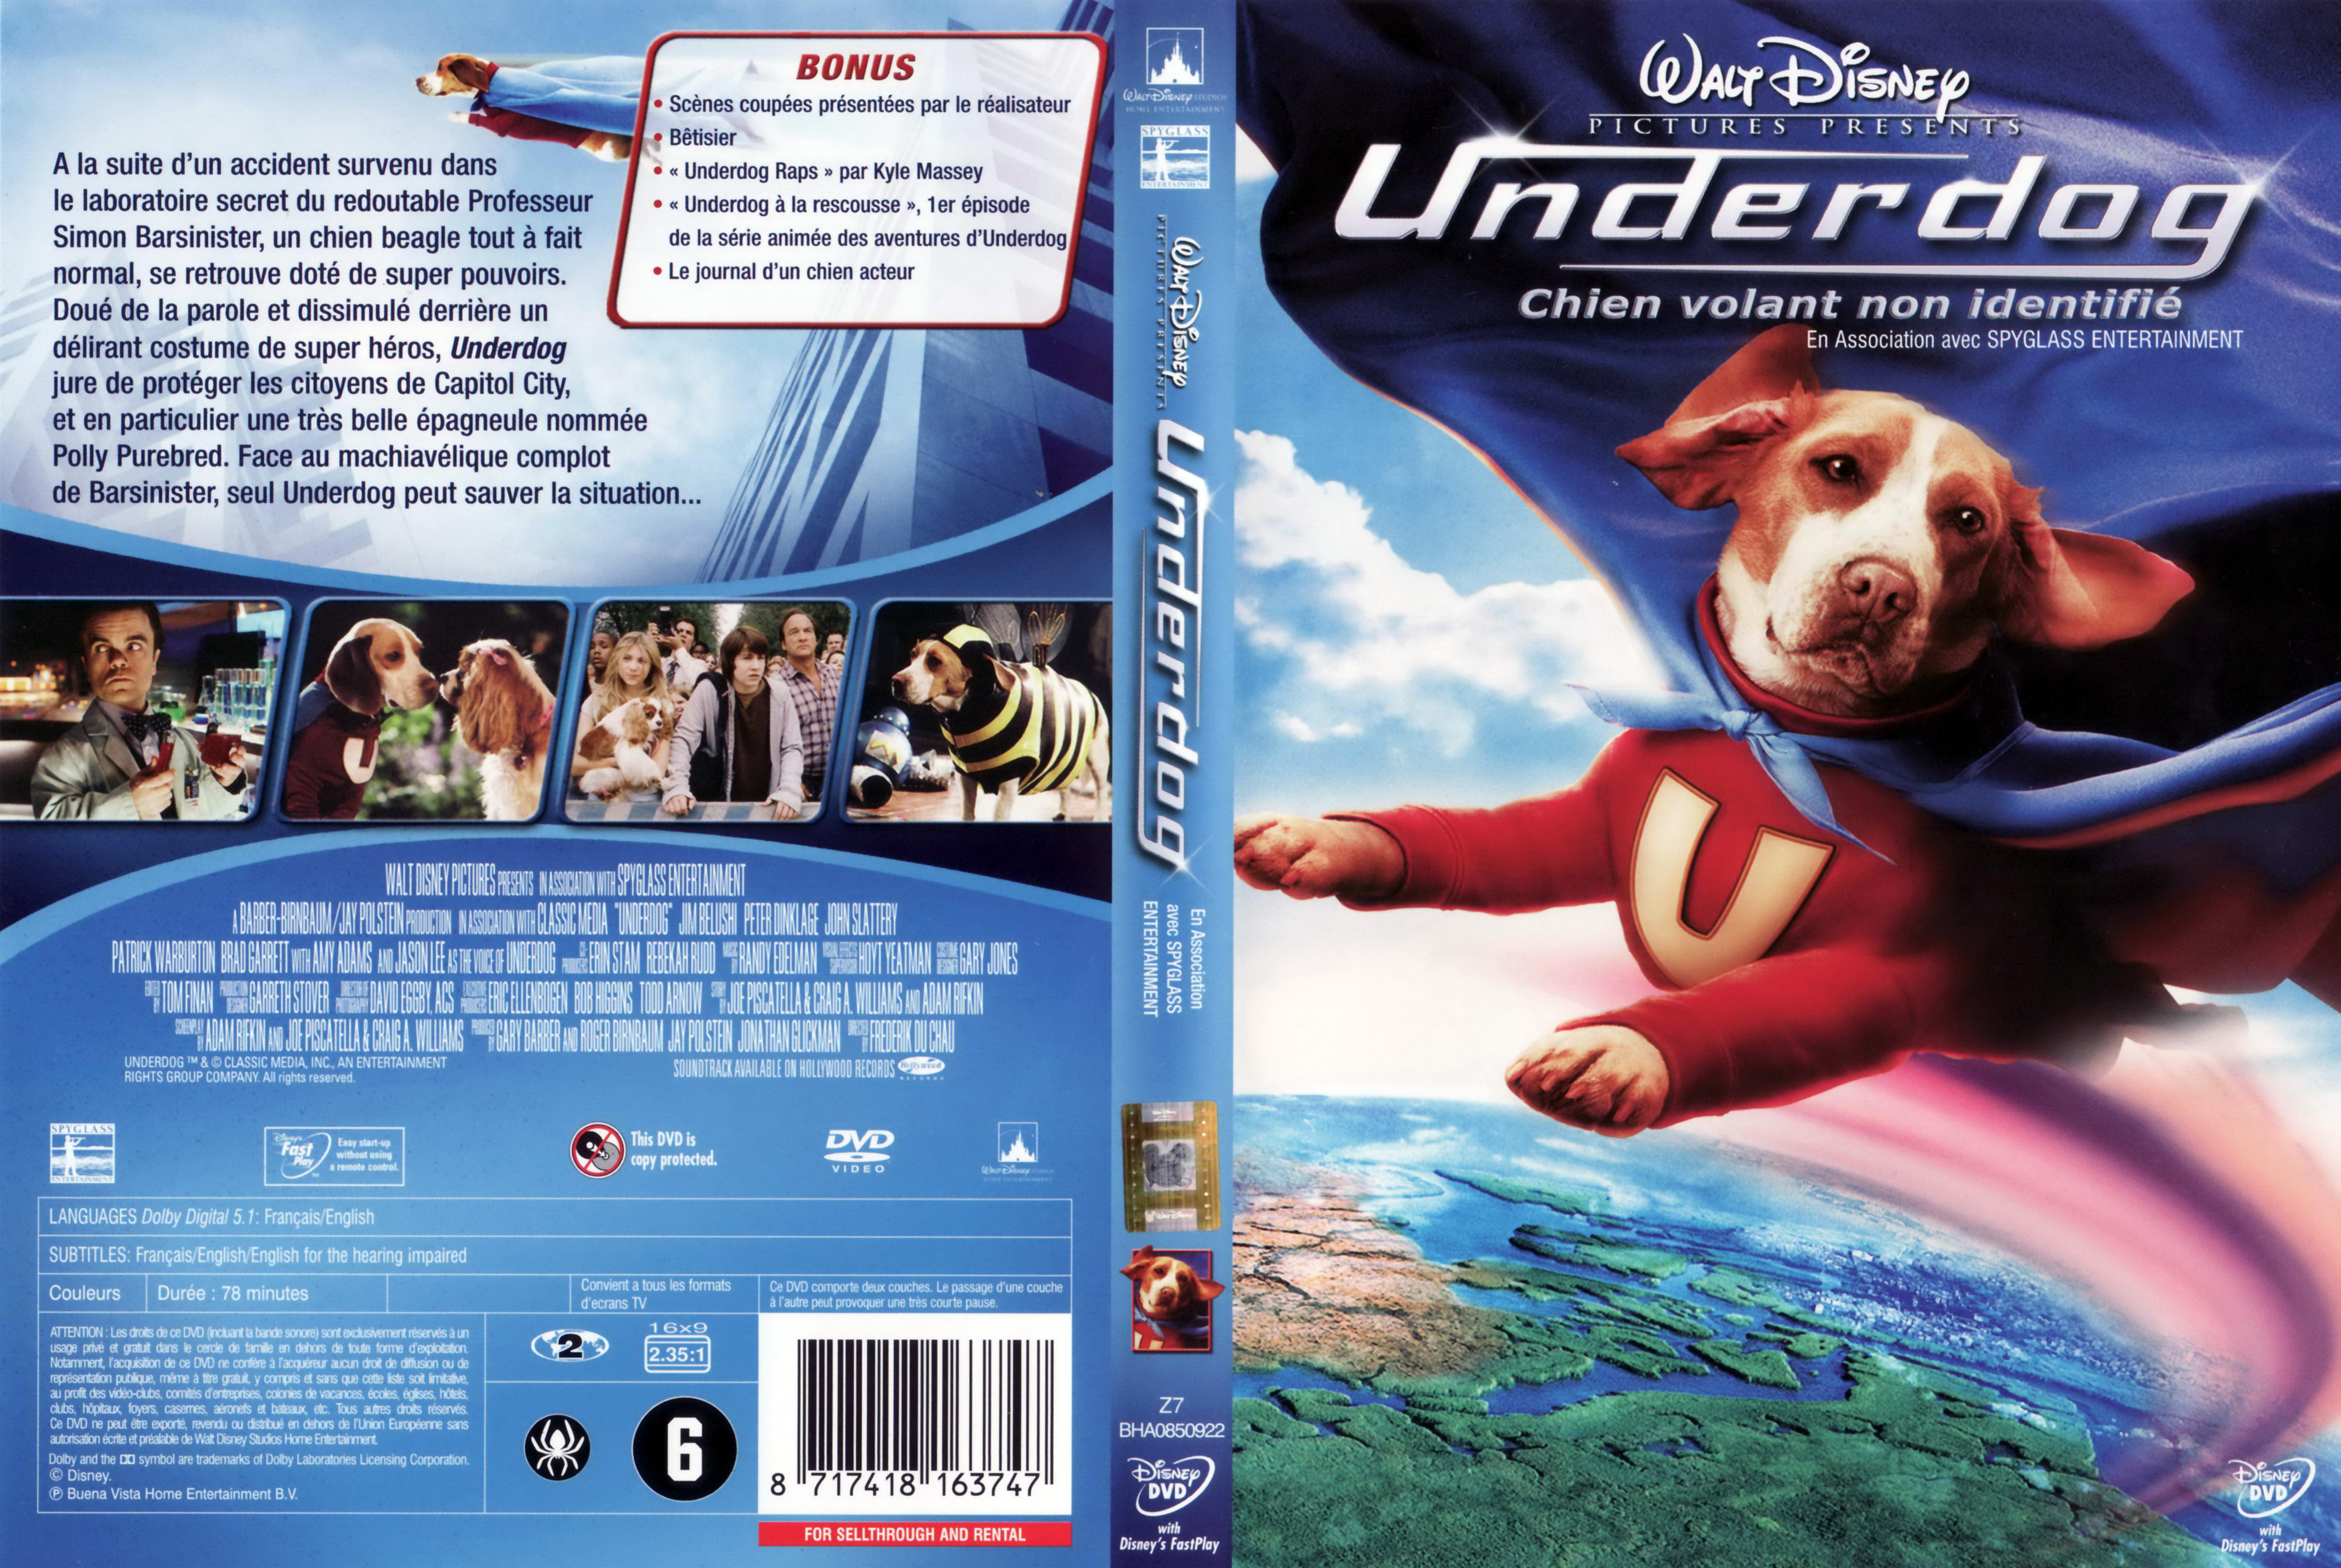 Jaquette DVD Underdog v2